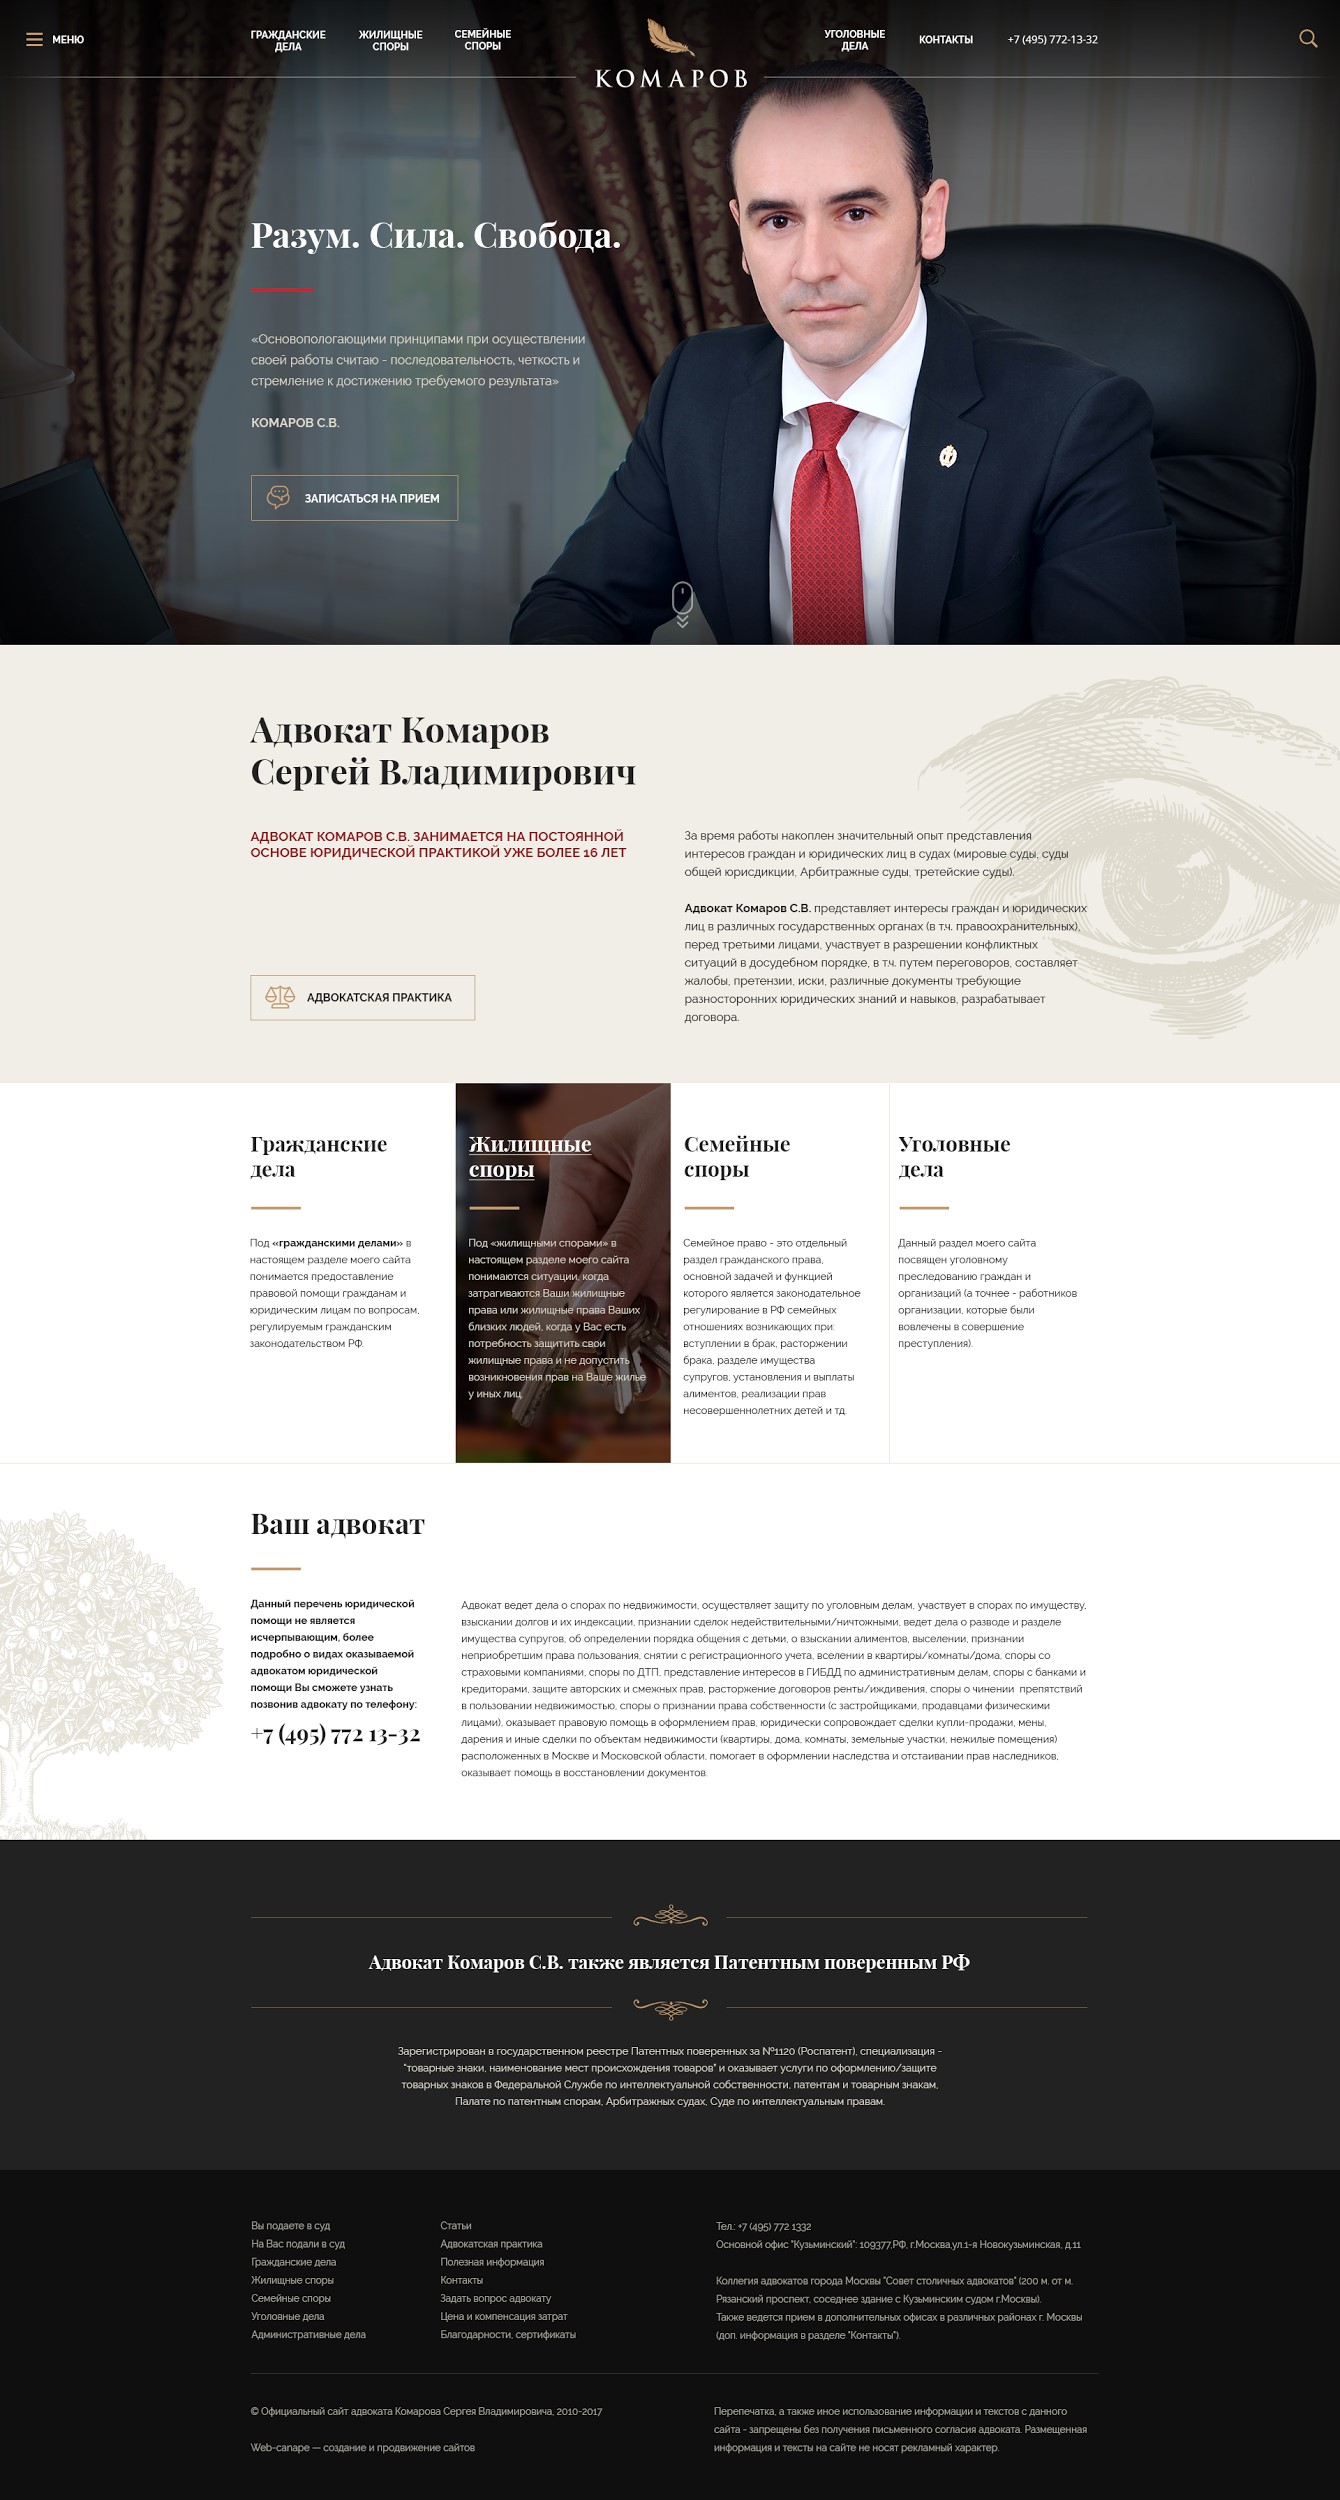 Адвокат Комаров — Новая главная страница